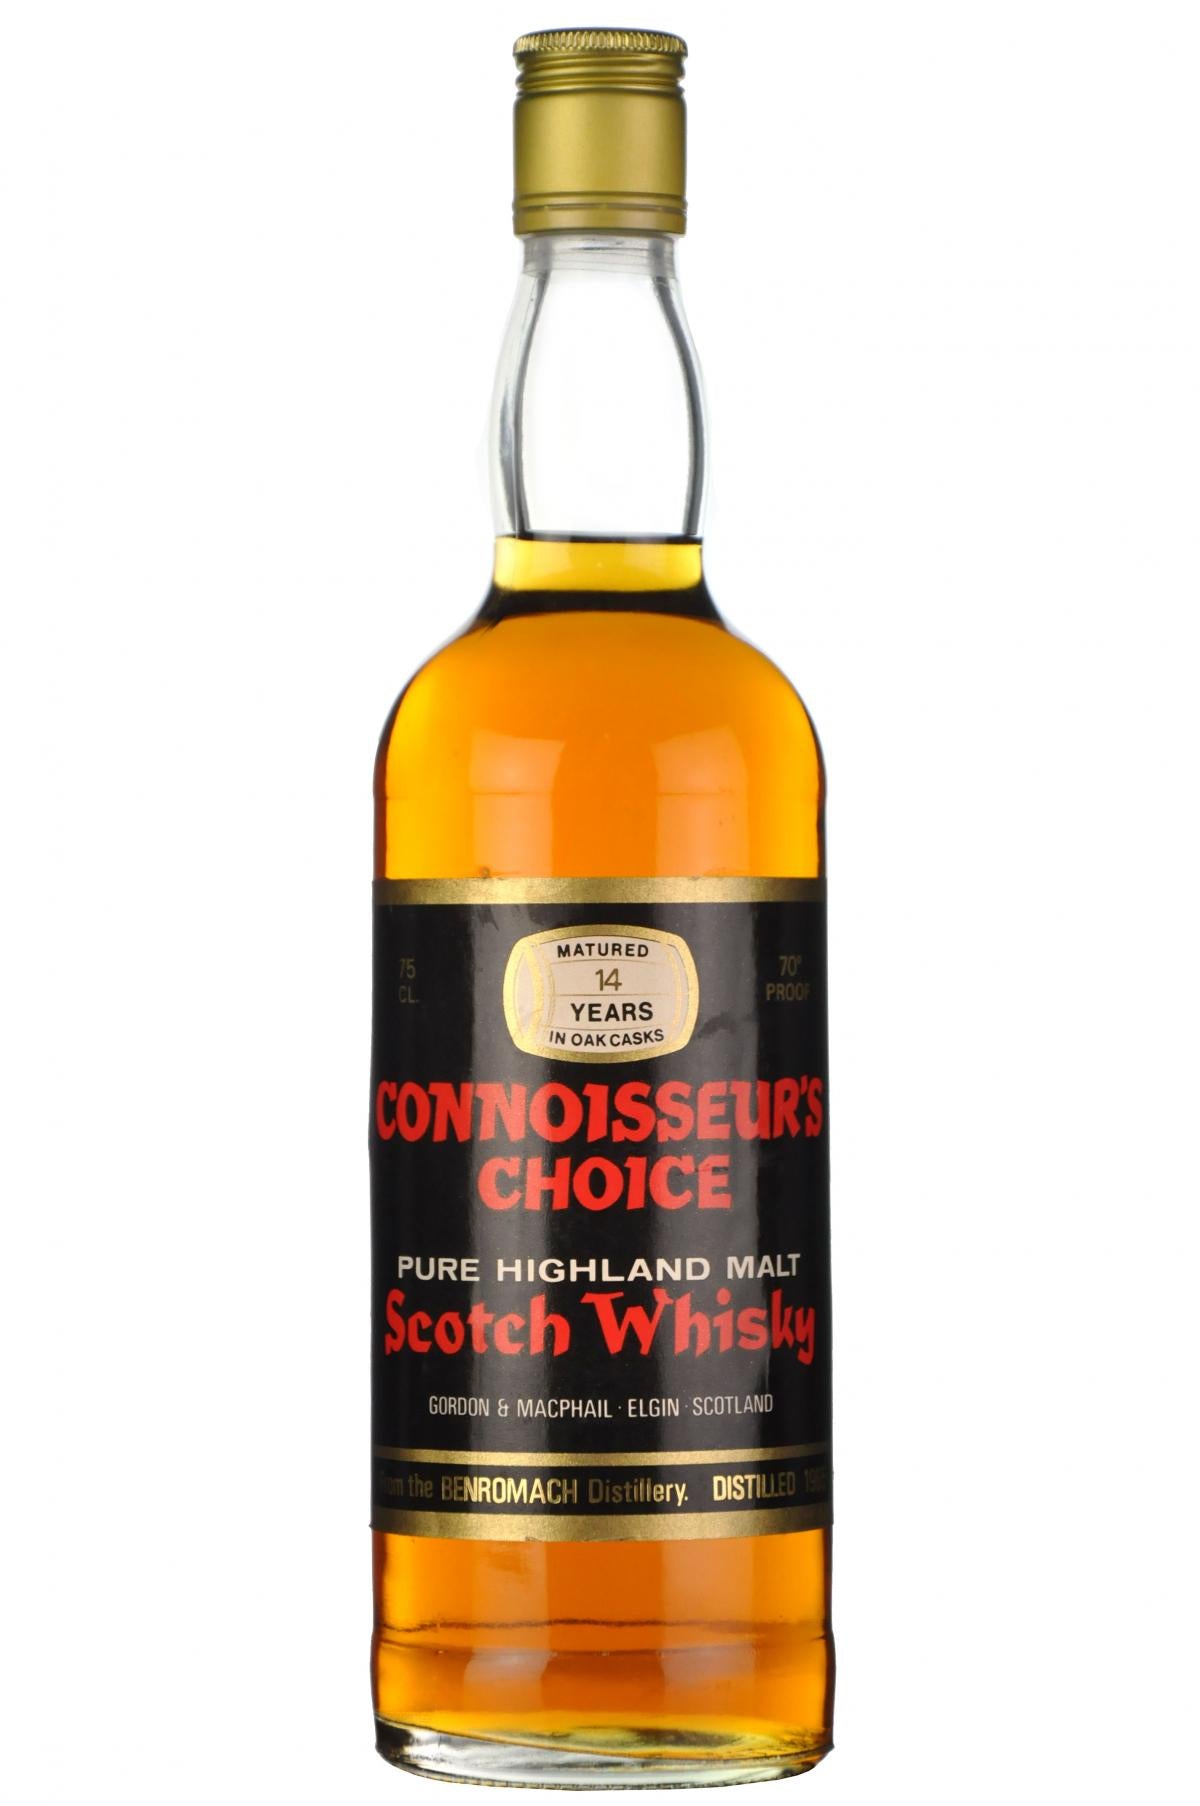 benromach 1965, connoisseurs choice 1970s, highland single malt scotch whisky